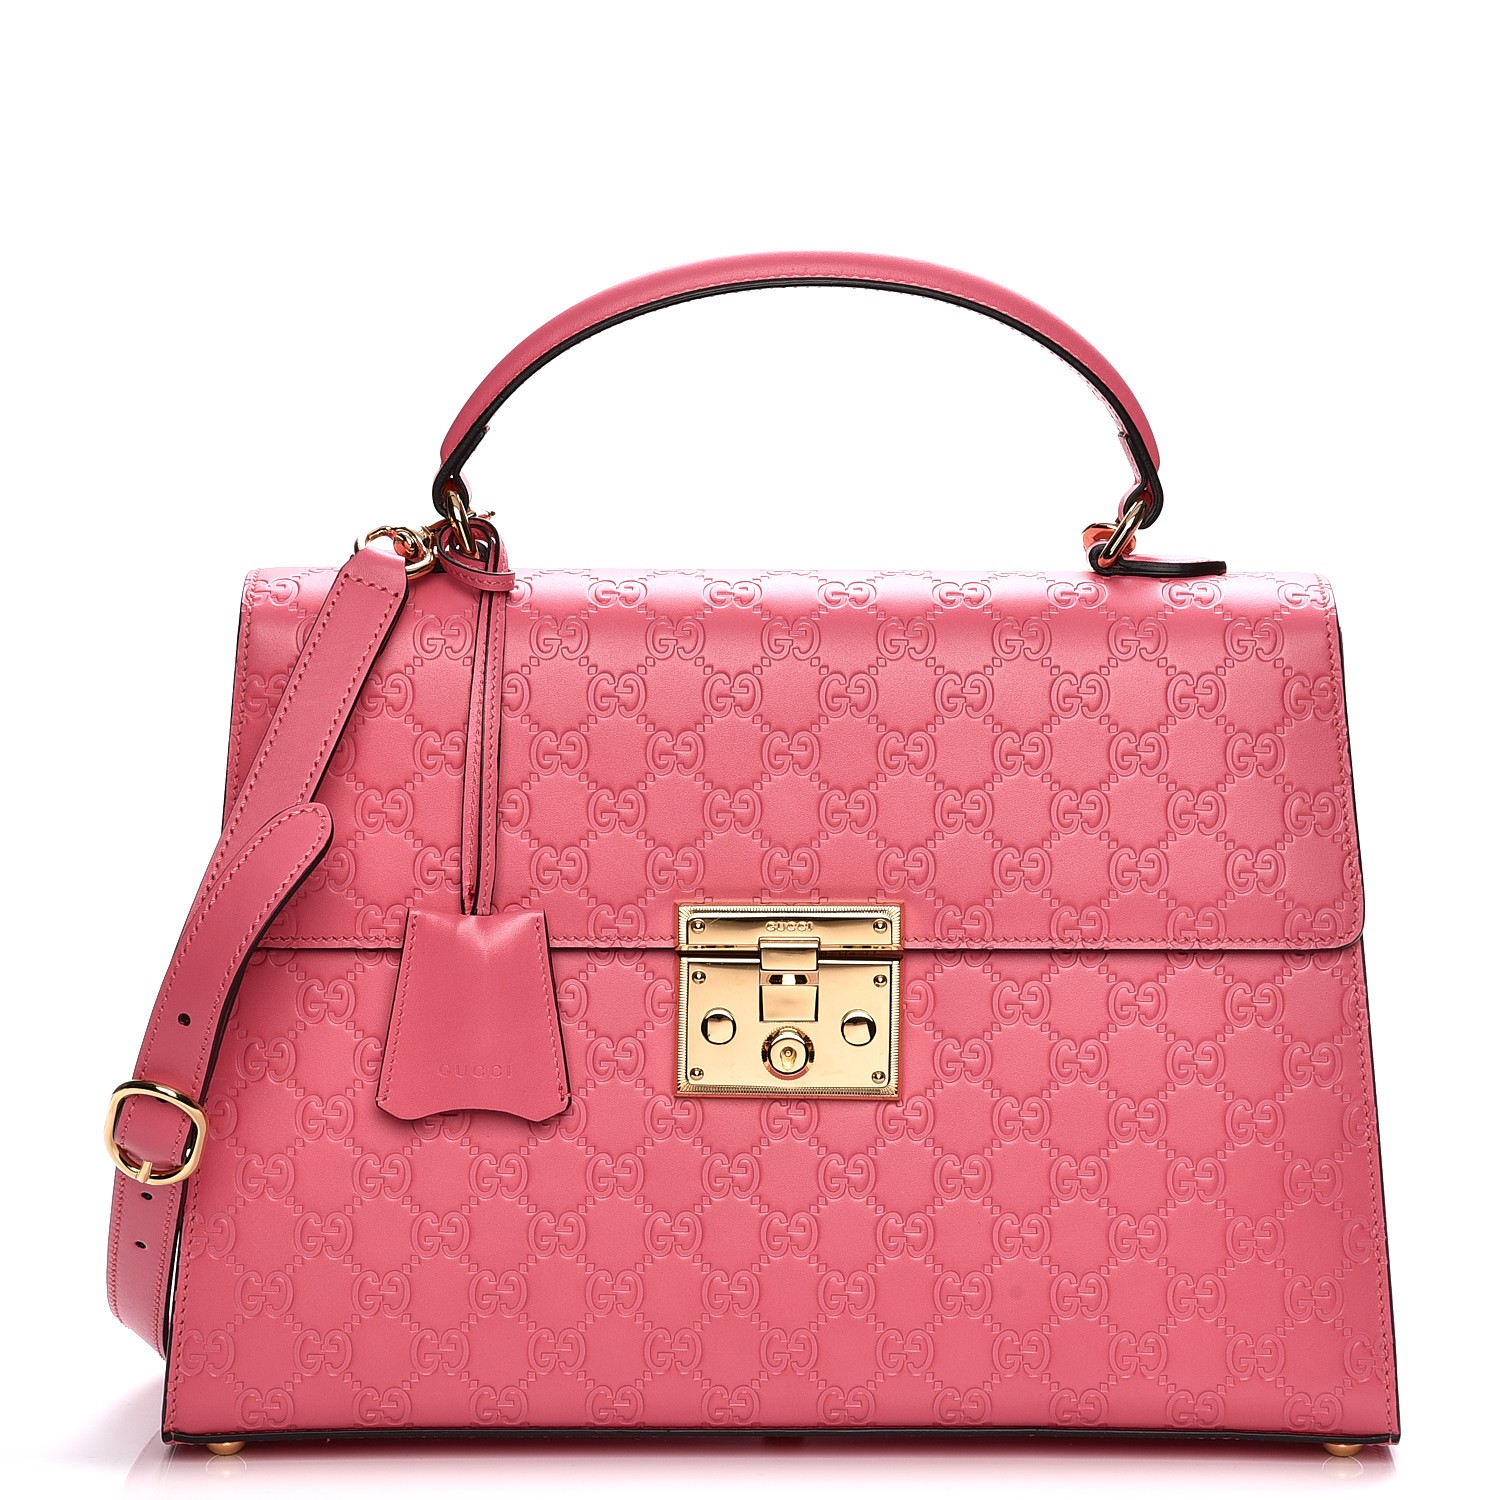 GUCCI Guccissima Medium Padlock Signature Top Handle Bag Pink 208231